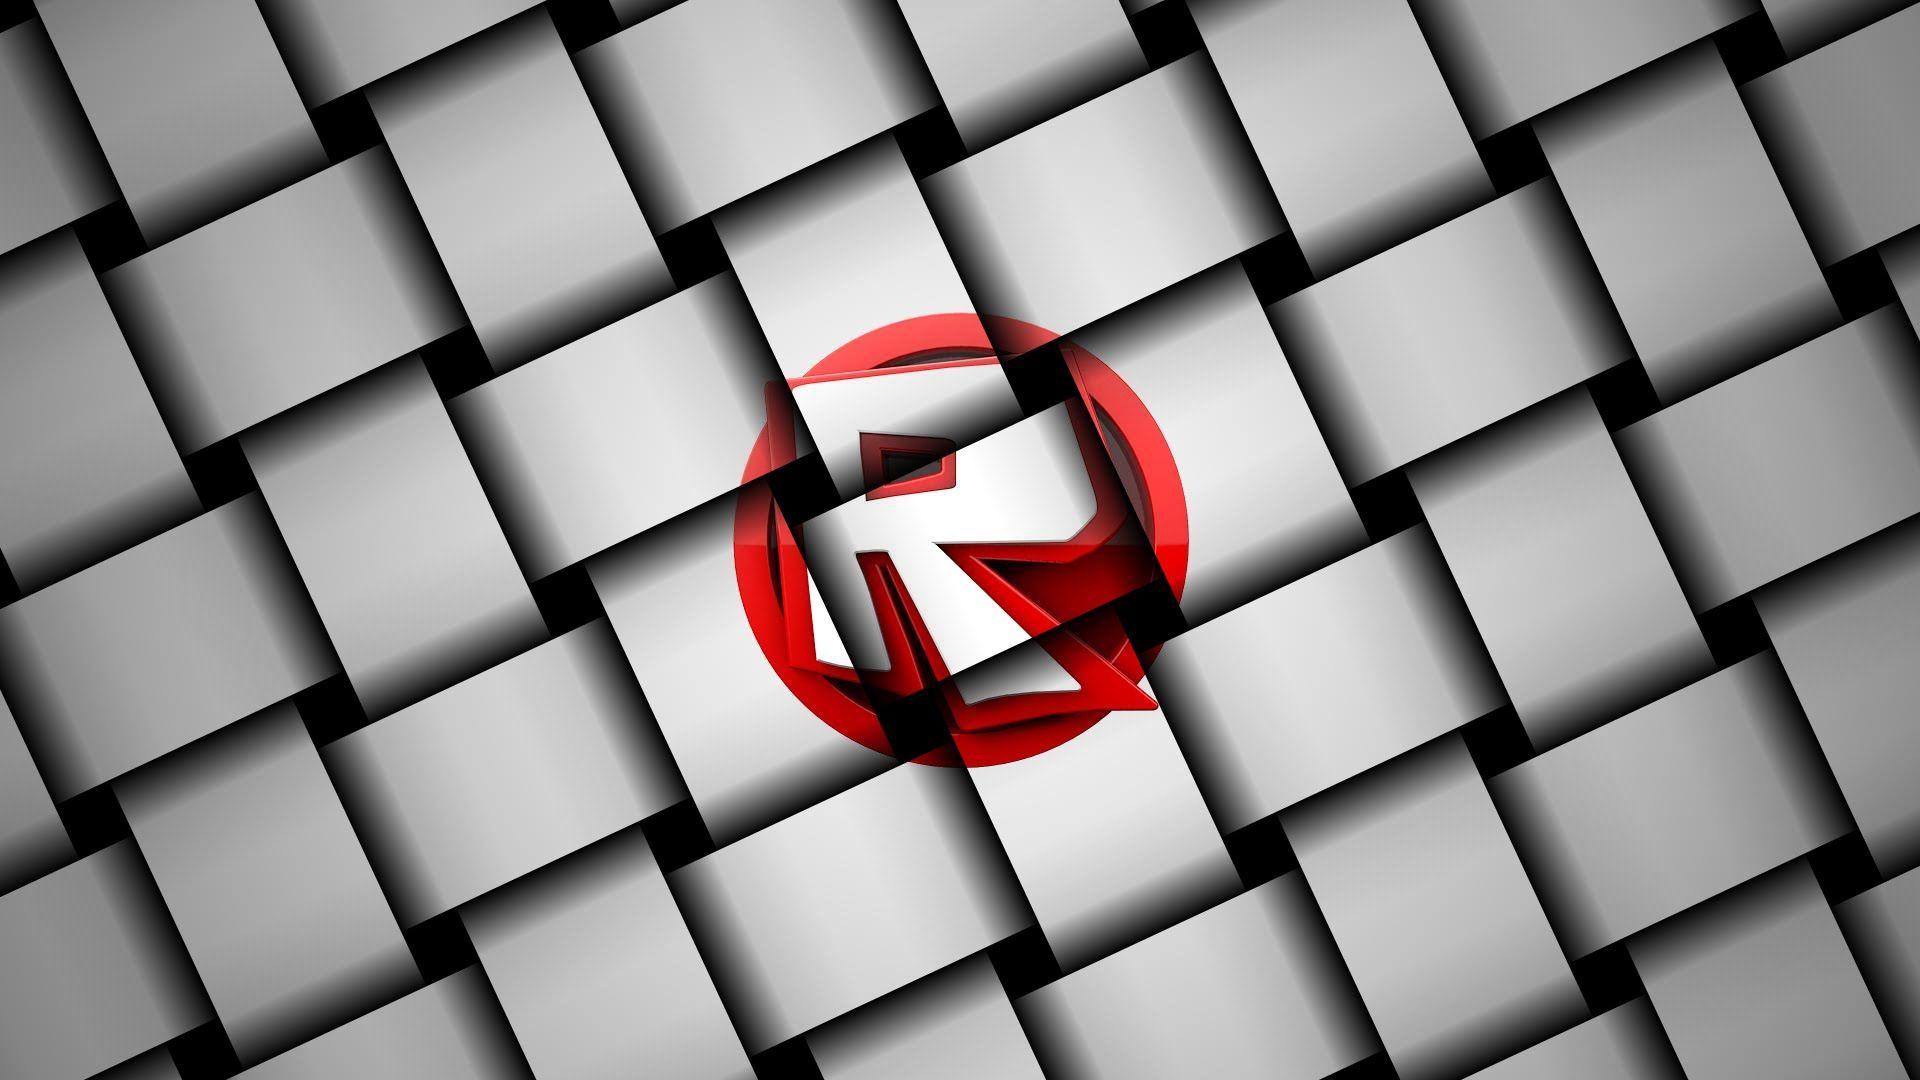 Roblox Desktop Wallpapers - Top Free Roblox Desktop Backgrounds